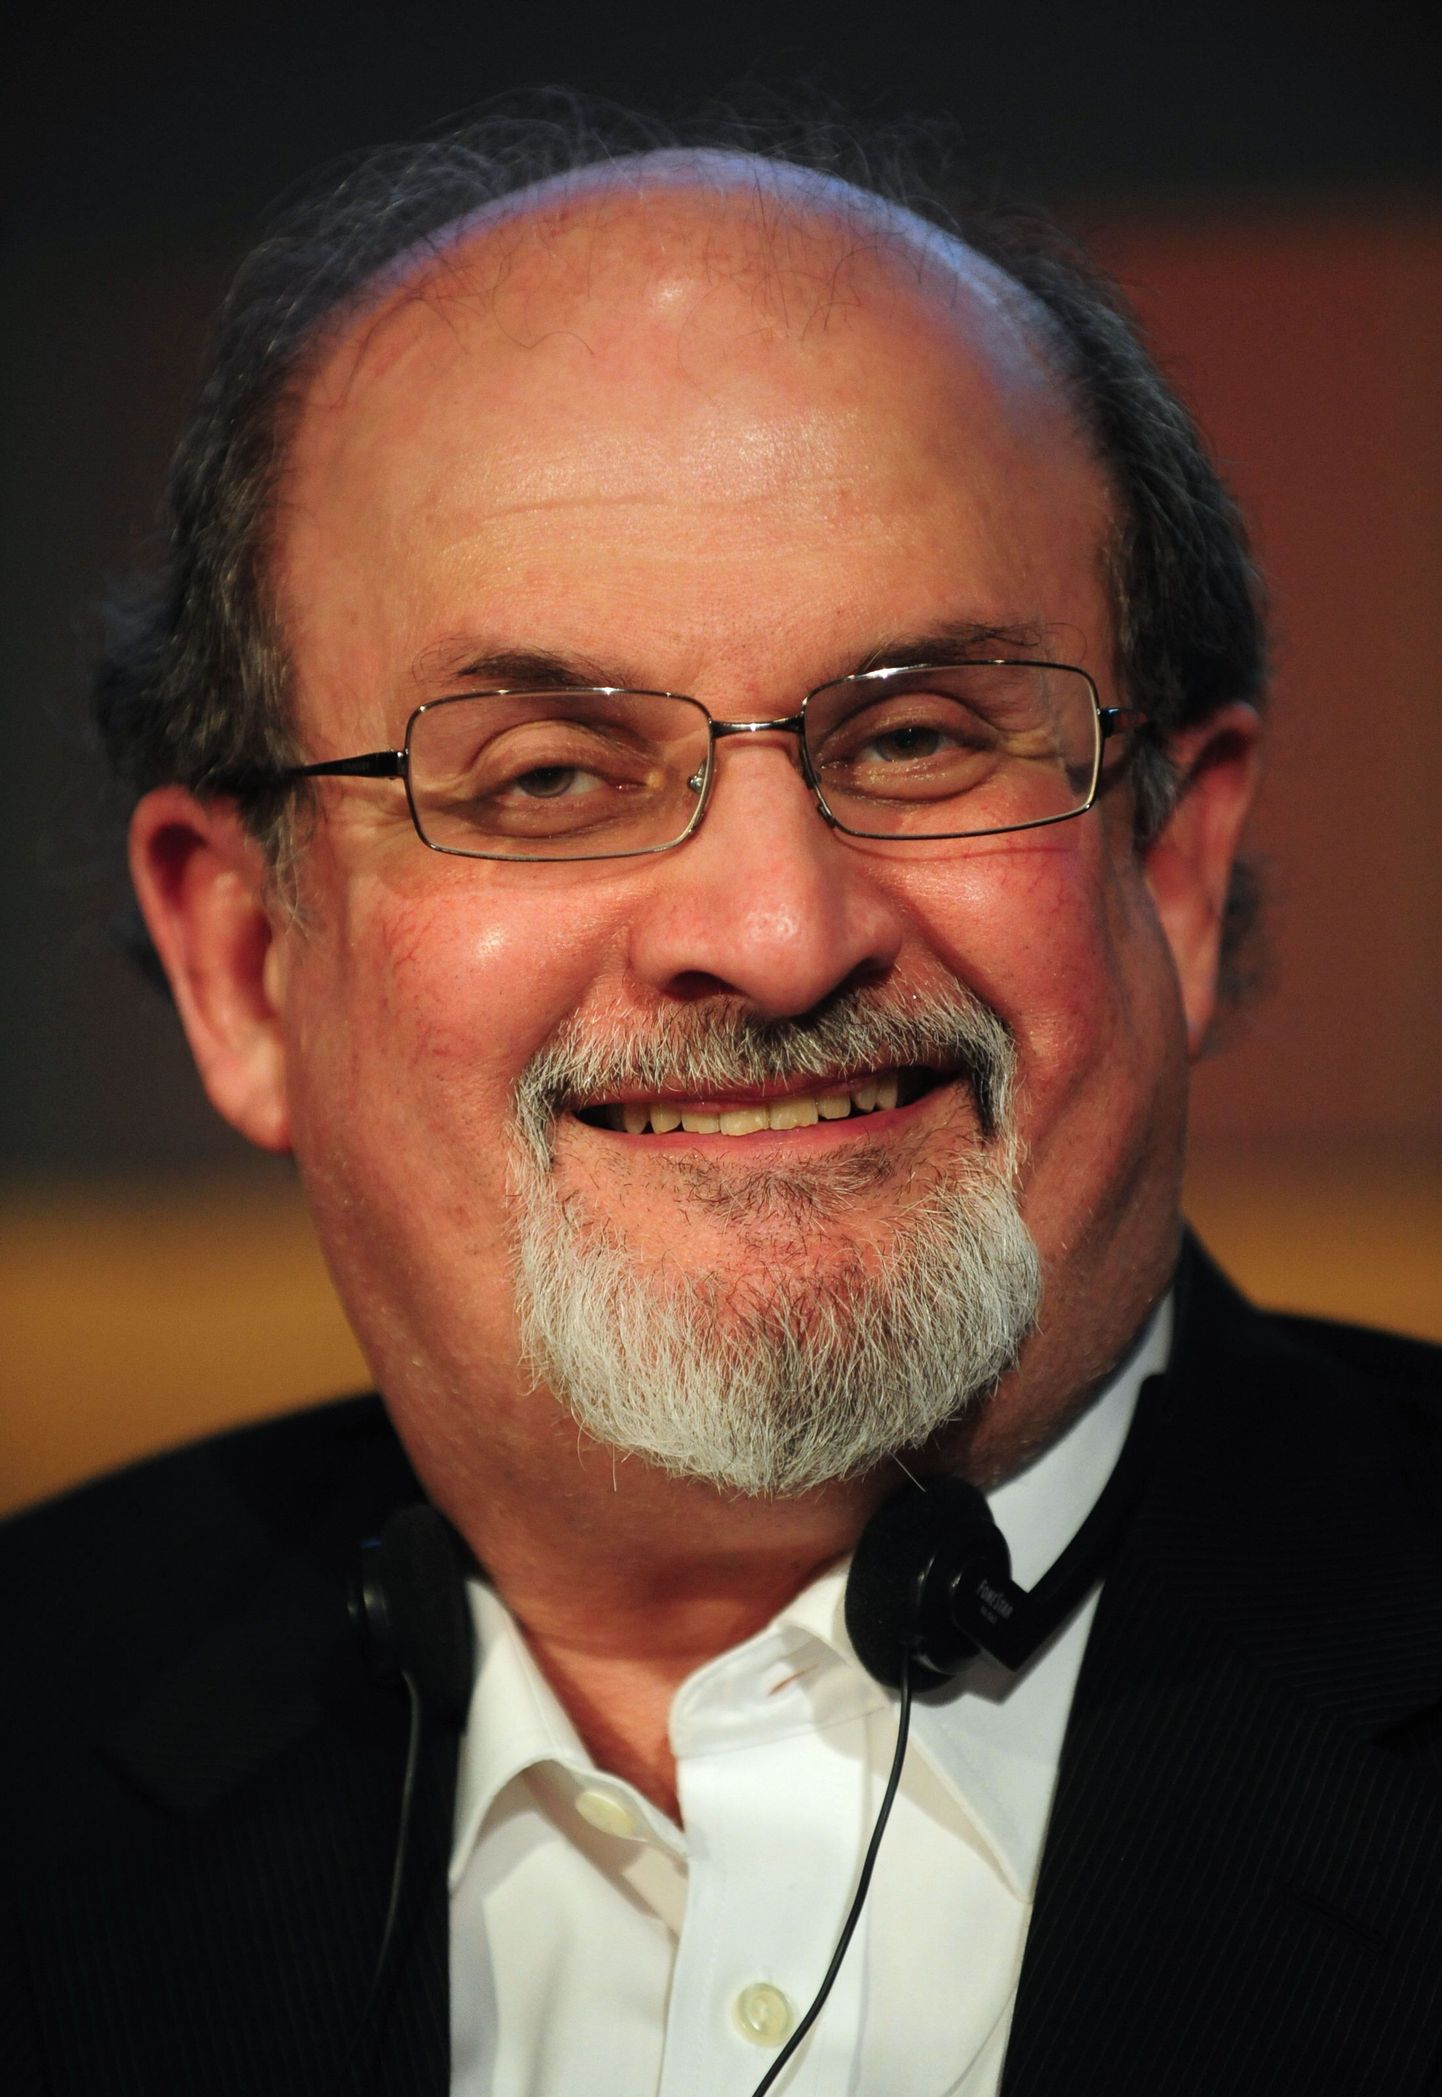 Sir Ahmed Salman Rushdie